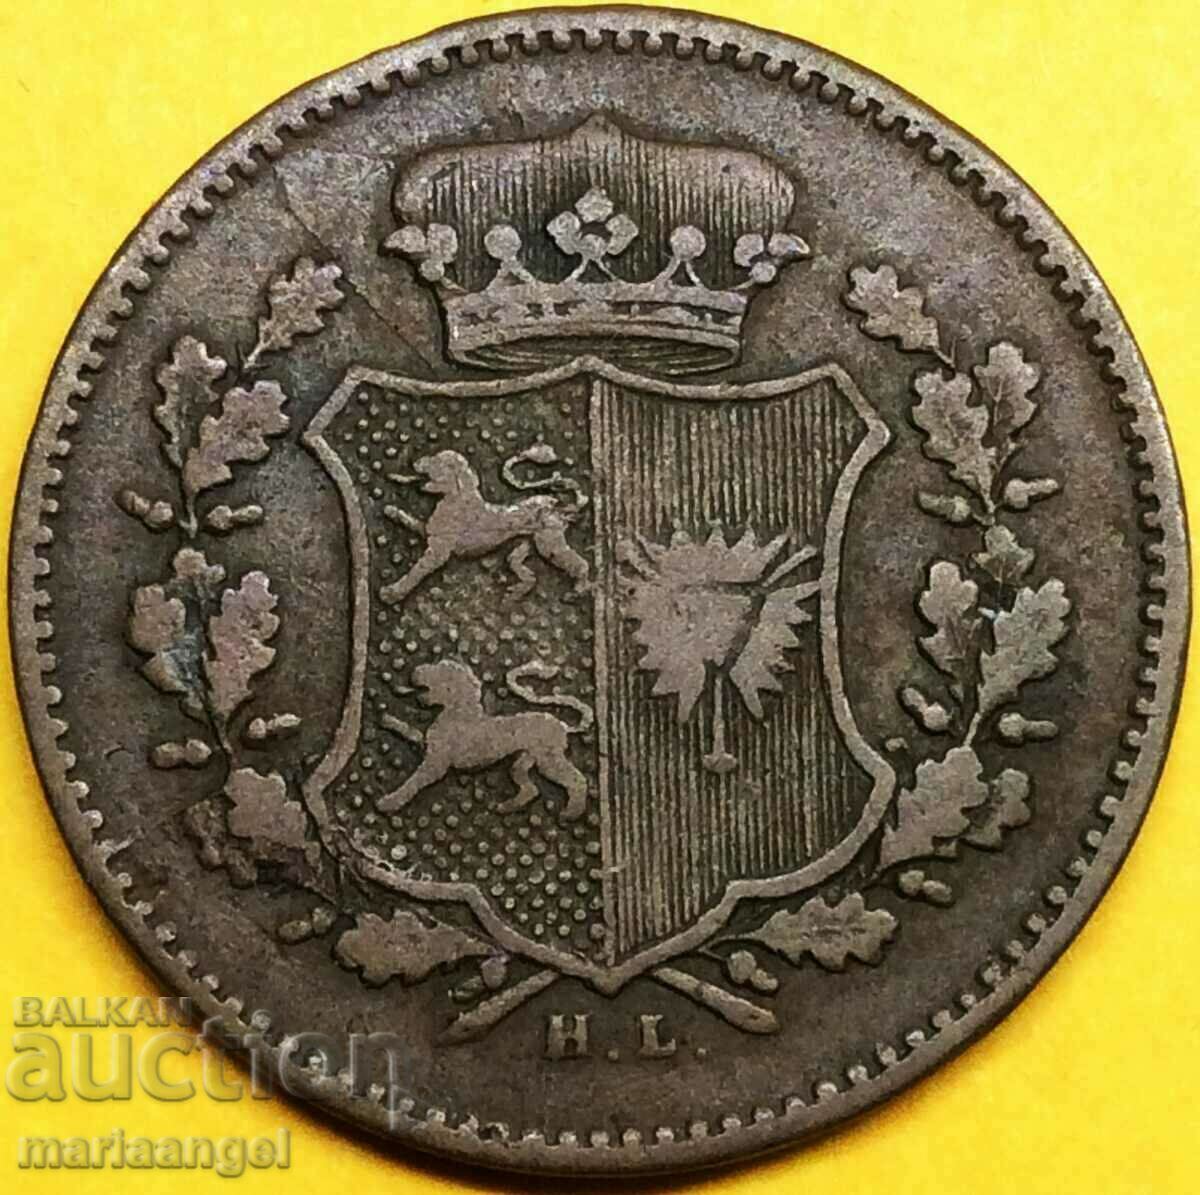 1 dreiling 1850 Germany 4.7g Christian VII Cu - quite rare